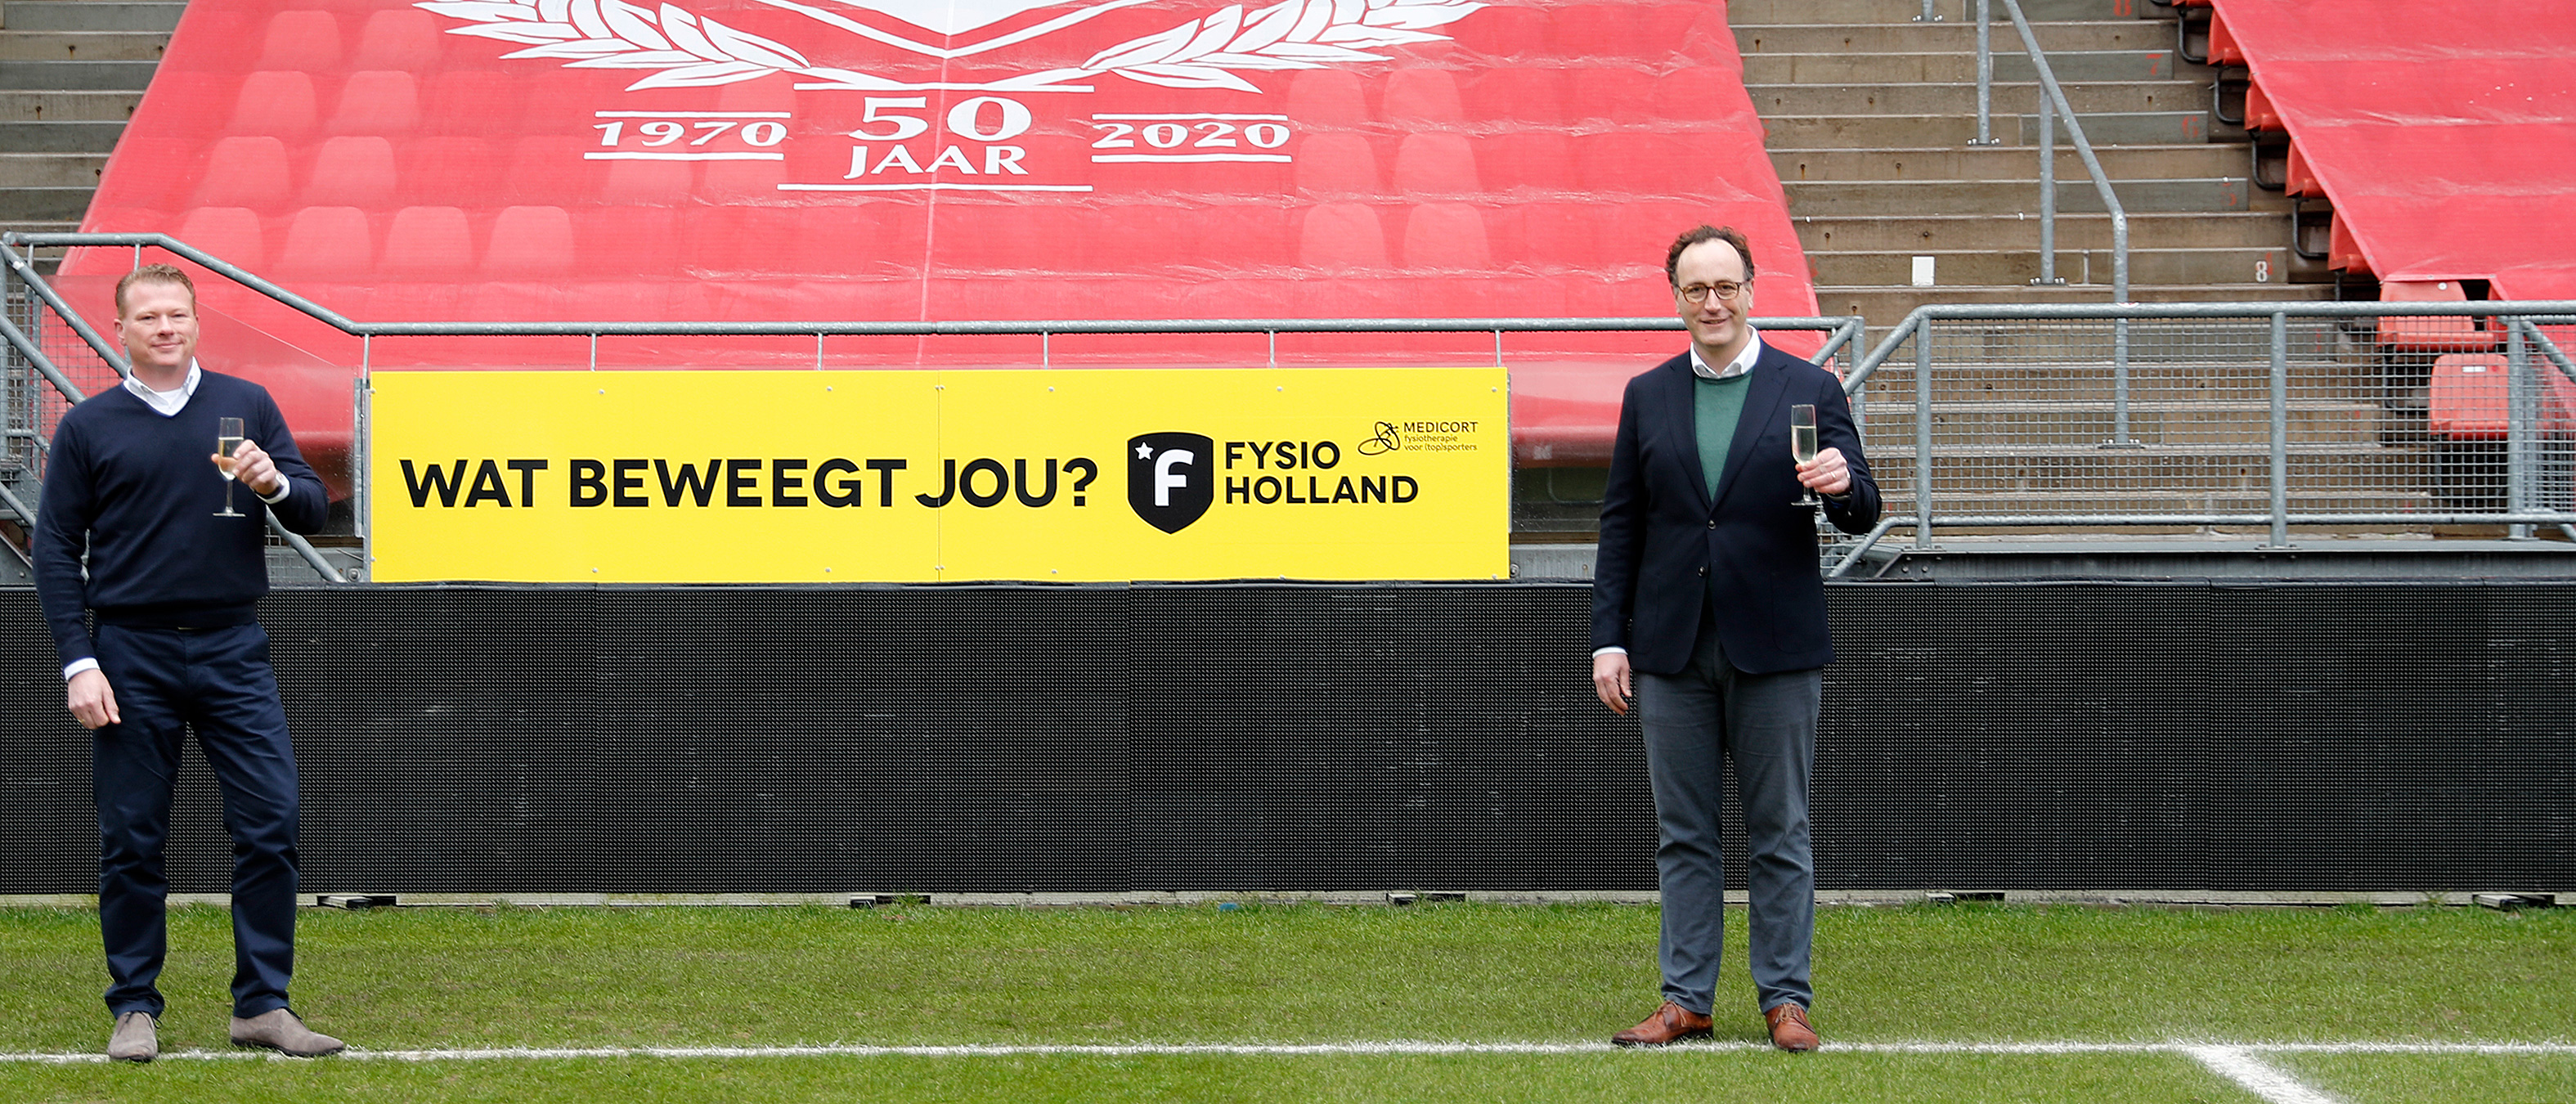 FC Utrecht gaat Partnership aan met FysioHolland Medicort